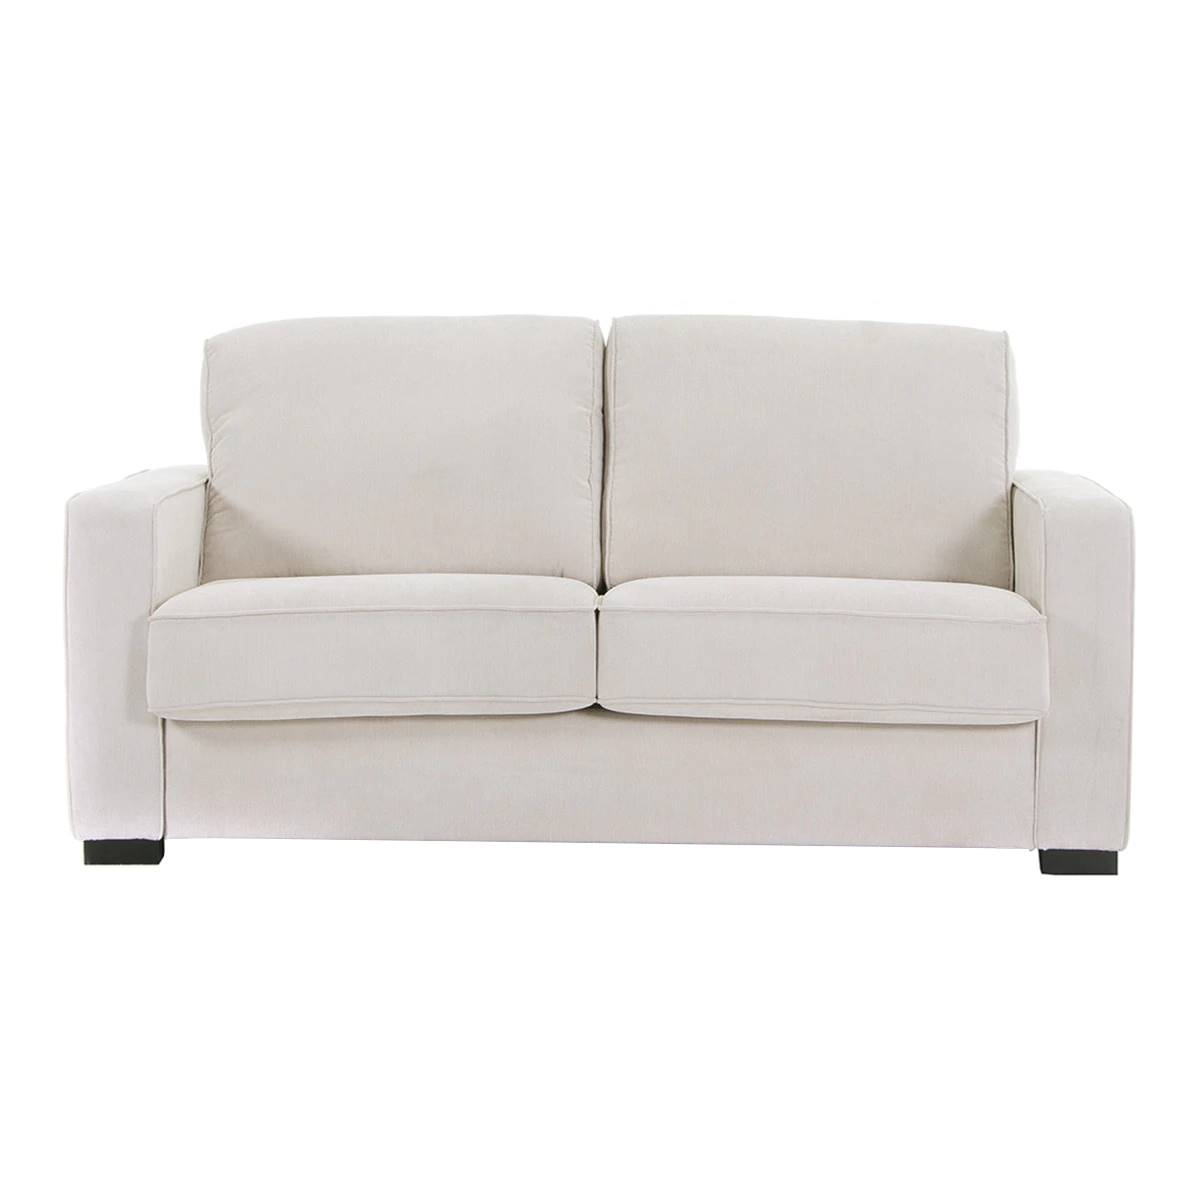 sofa padua blanco 00112800503794 eci